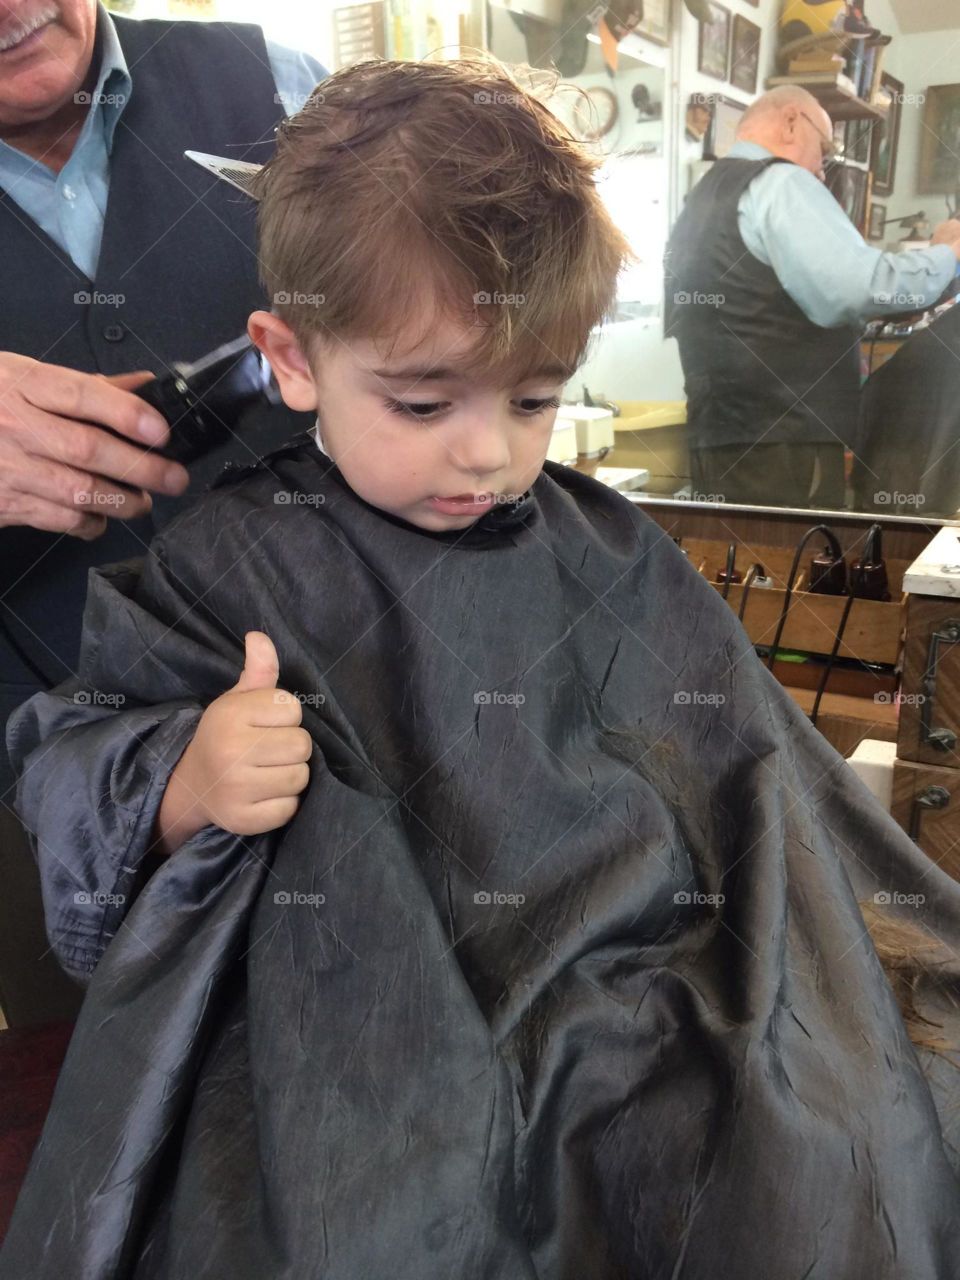 Sons haircut 